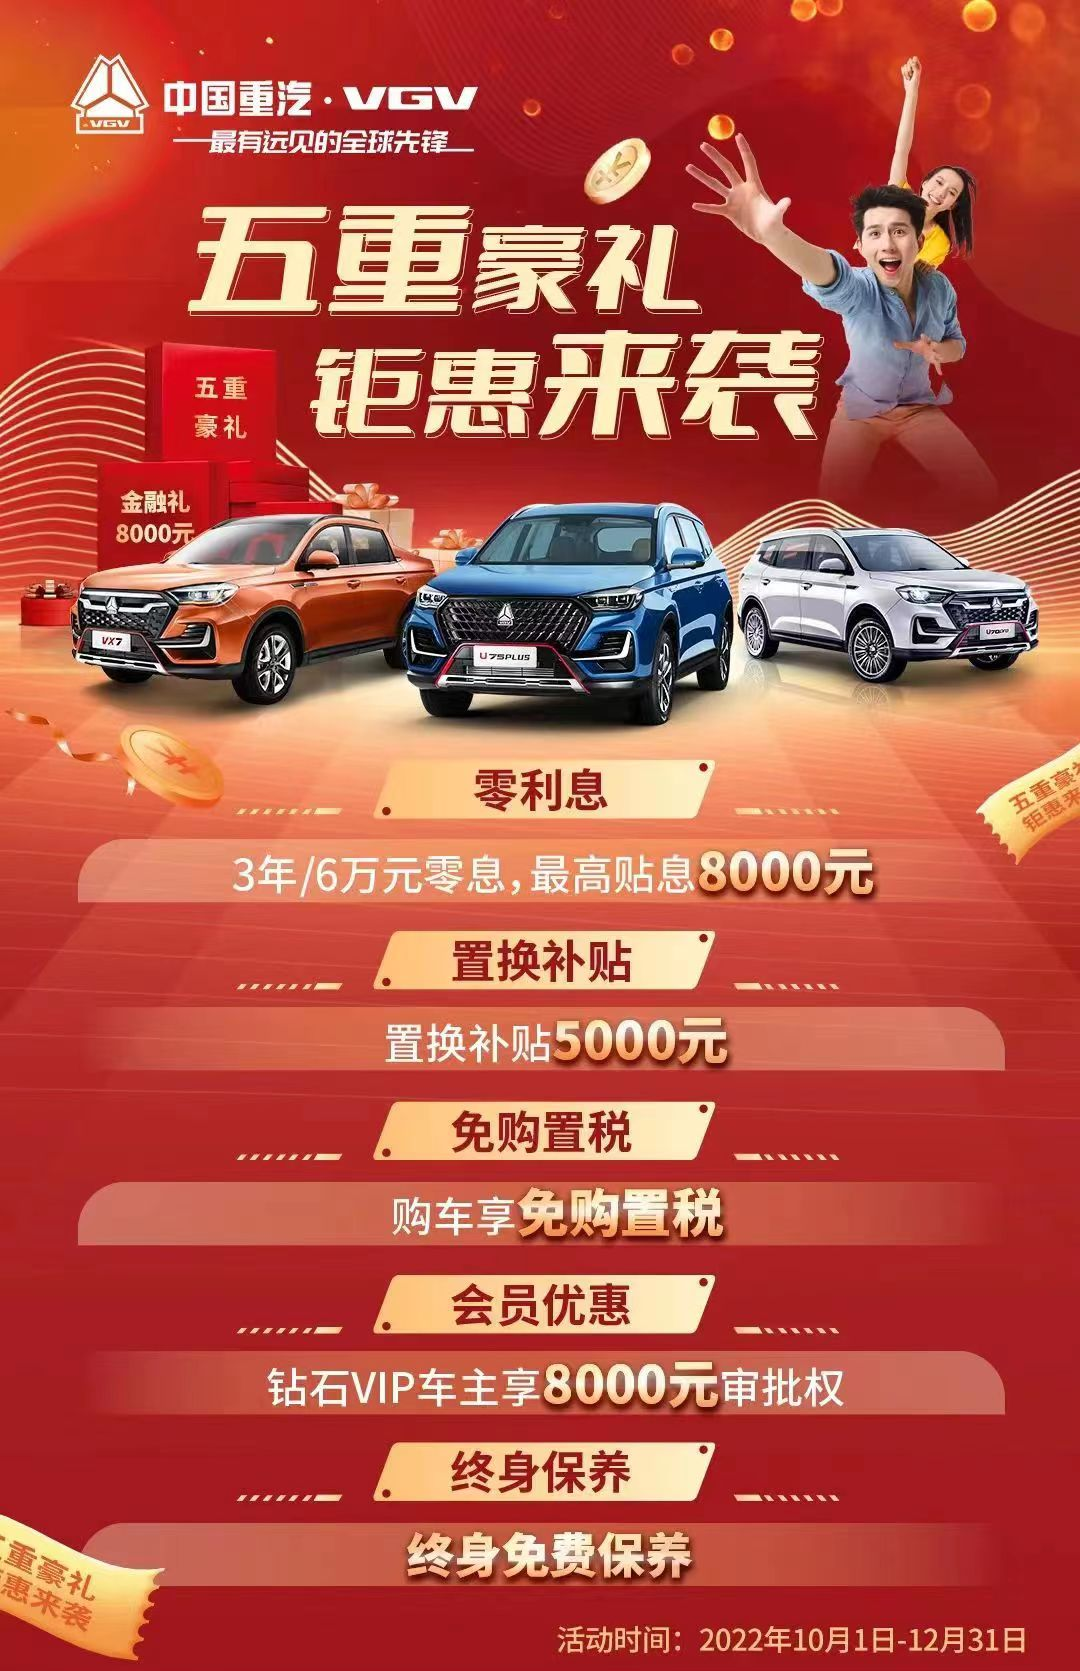 岂止于大 中国重汽VGV U75PLUS更是一台好玩的SUV